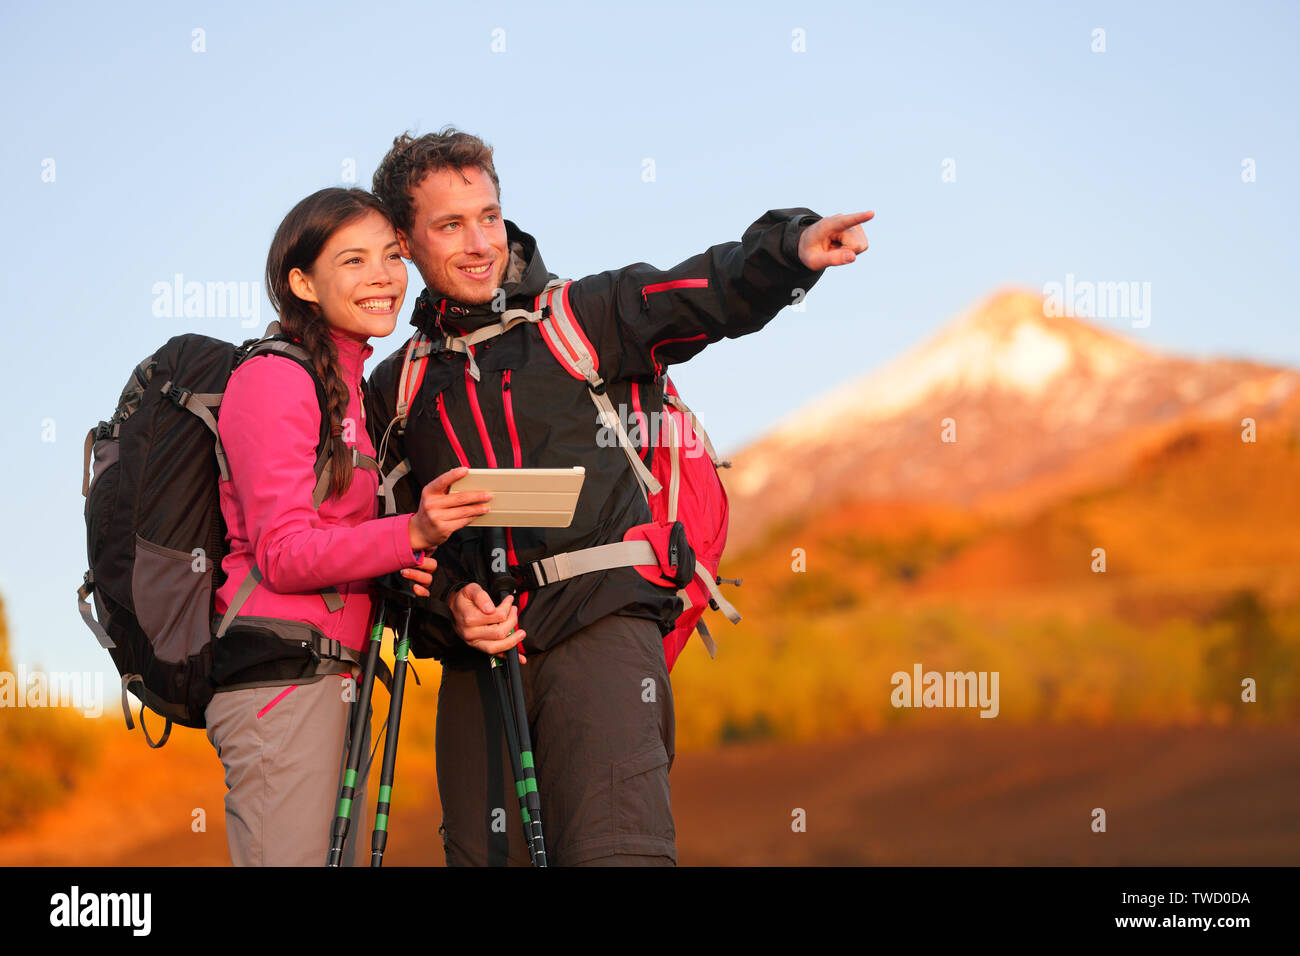 Tablet PC - Wandern Paar mit Travel App oder Karte auf Wanderung. Mann und Frau Wanderer auf Ansicht zeigen und zeigen während der Wanderung auf den Vulkan Teide, Teneriffa, Kanarische Inseln, Spanien. Stockfoto